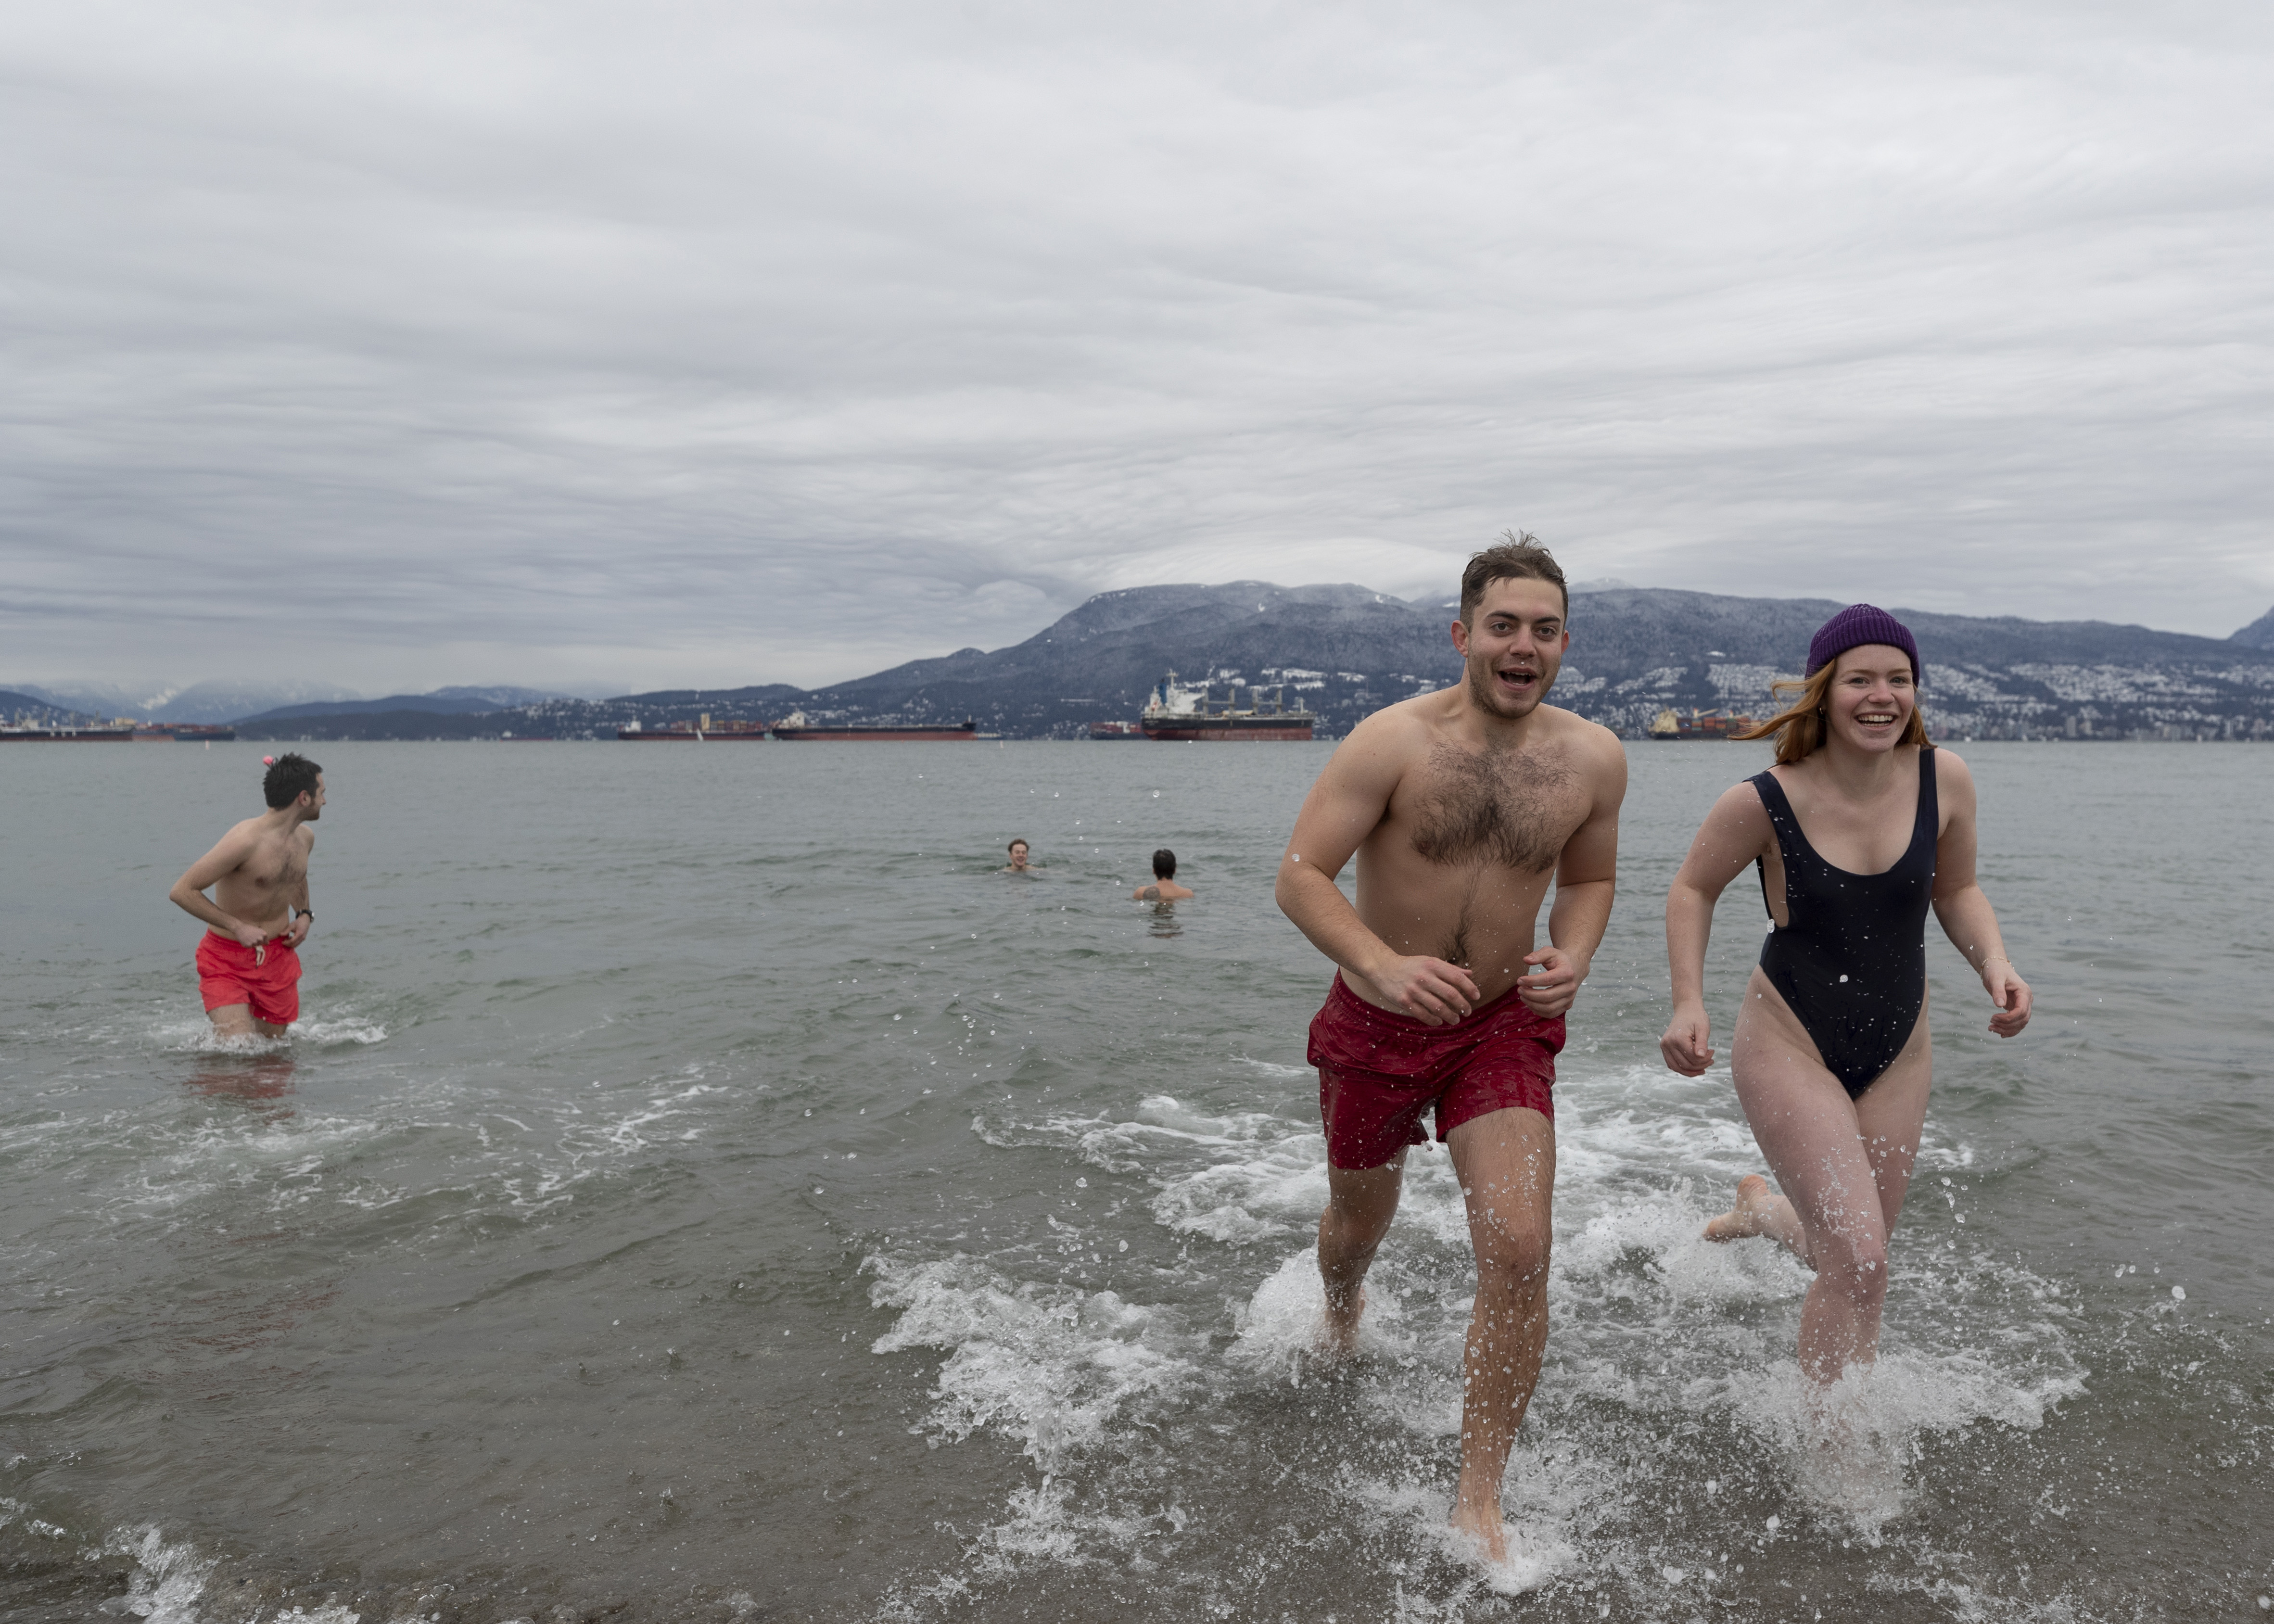 Cada vez hay más pruebas de que los nadadores de invierno son más resistentes a ciertas enfermedades e infecciones, y las experimentan con menos frecuencia y de forma más leve.
(Photo by Andrew Chin/Getty Images)